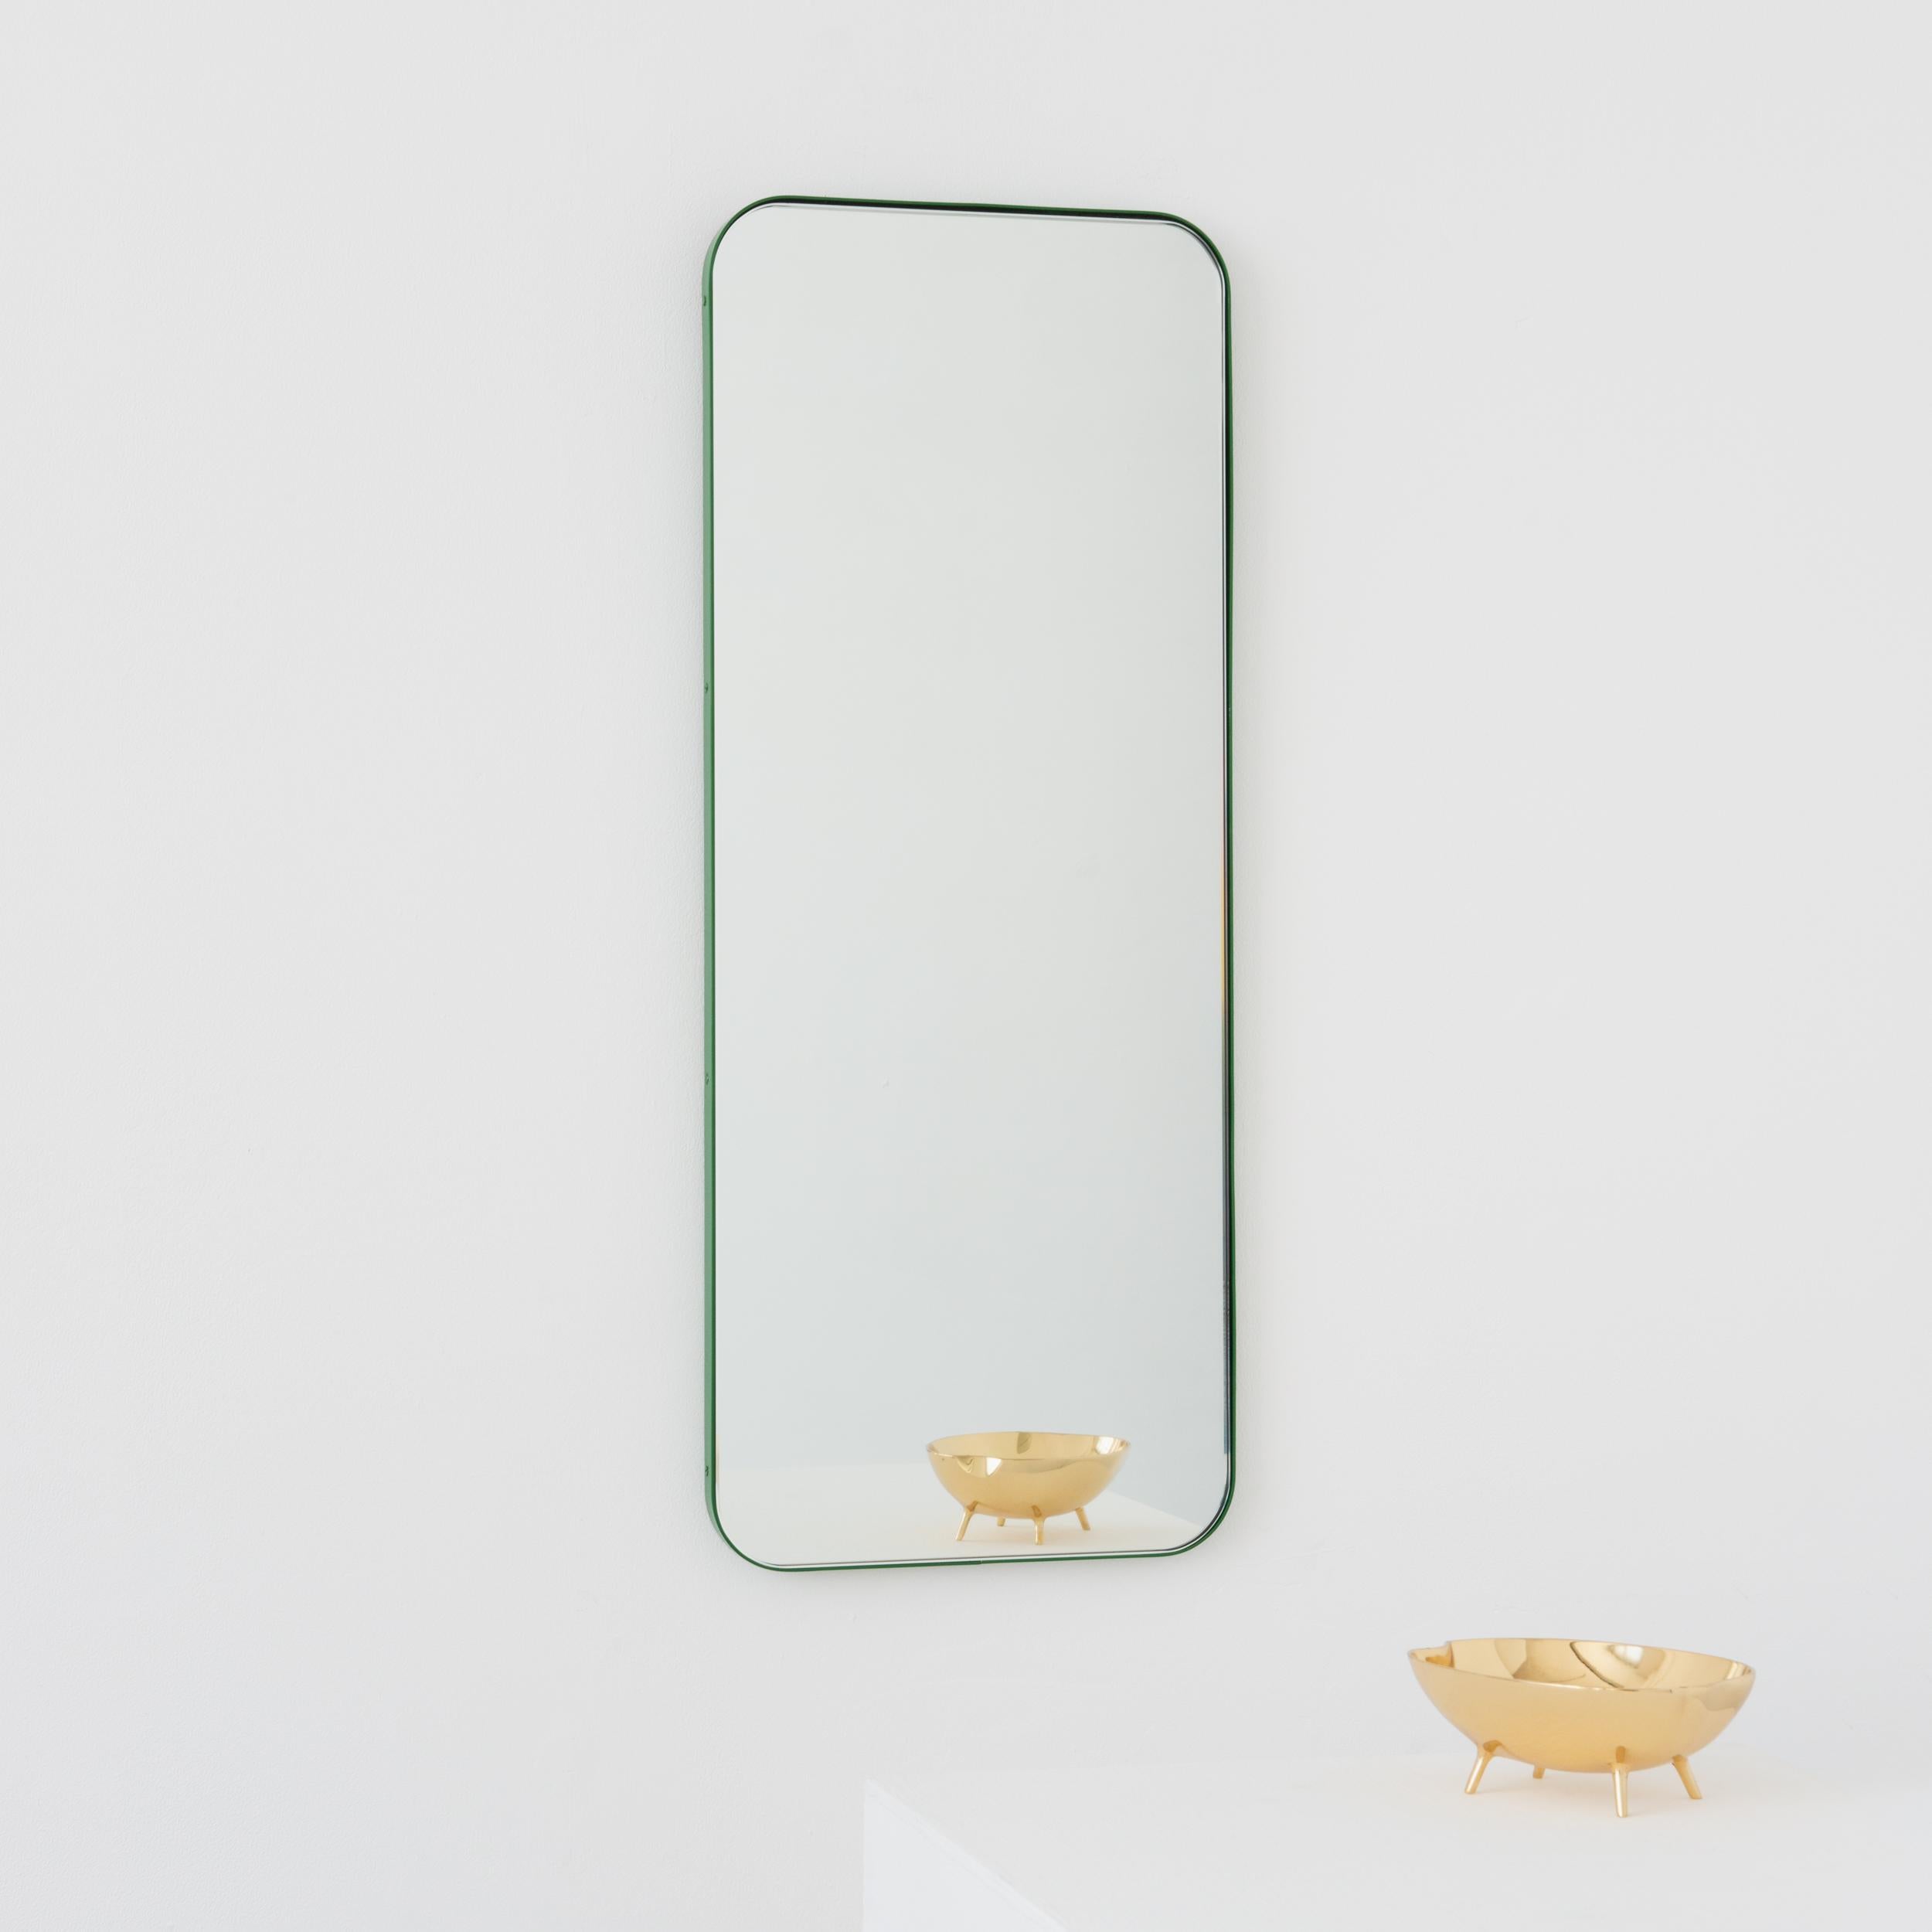 Moderner rechteckiger Spiegel mit einem eleganten grünen Rahmen. Teil der charmanten Quadris Kollektion, entworfen und handgefertigt in London, UK. 

Die Lieferung erfolgt mit einer speziellen Z-Stange für eine einfache Installation. Auf Anfrage ist